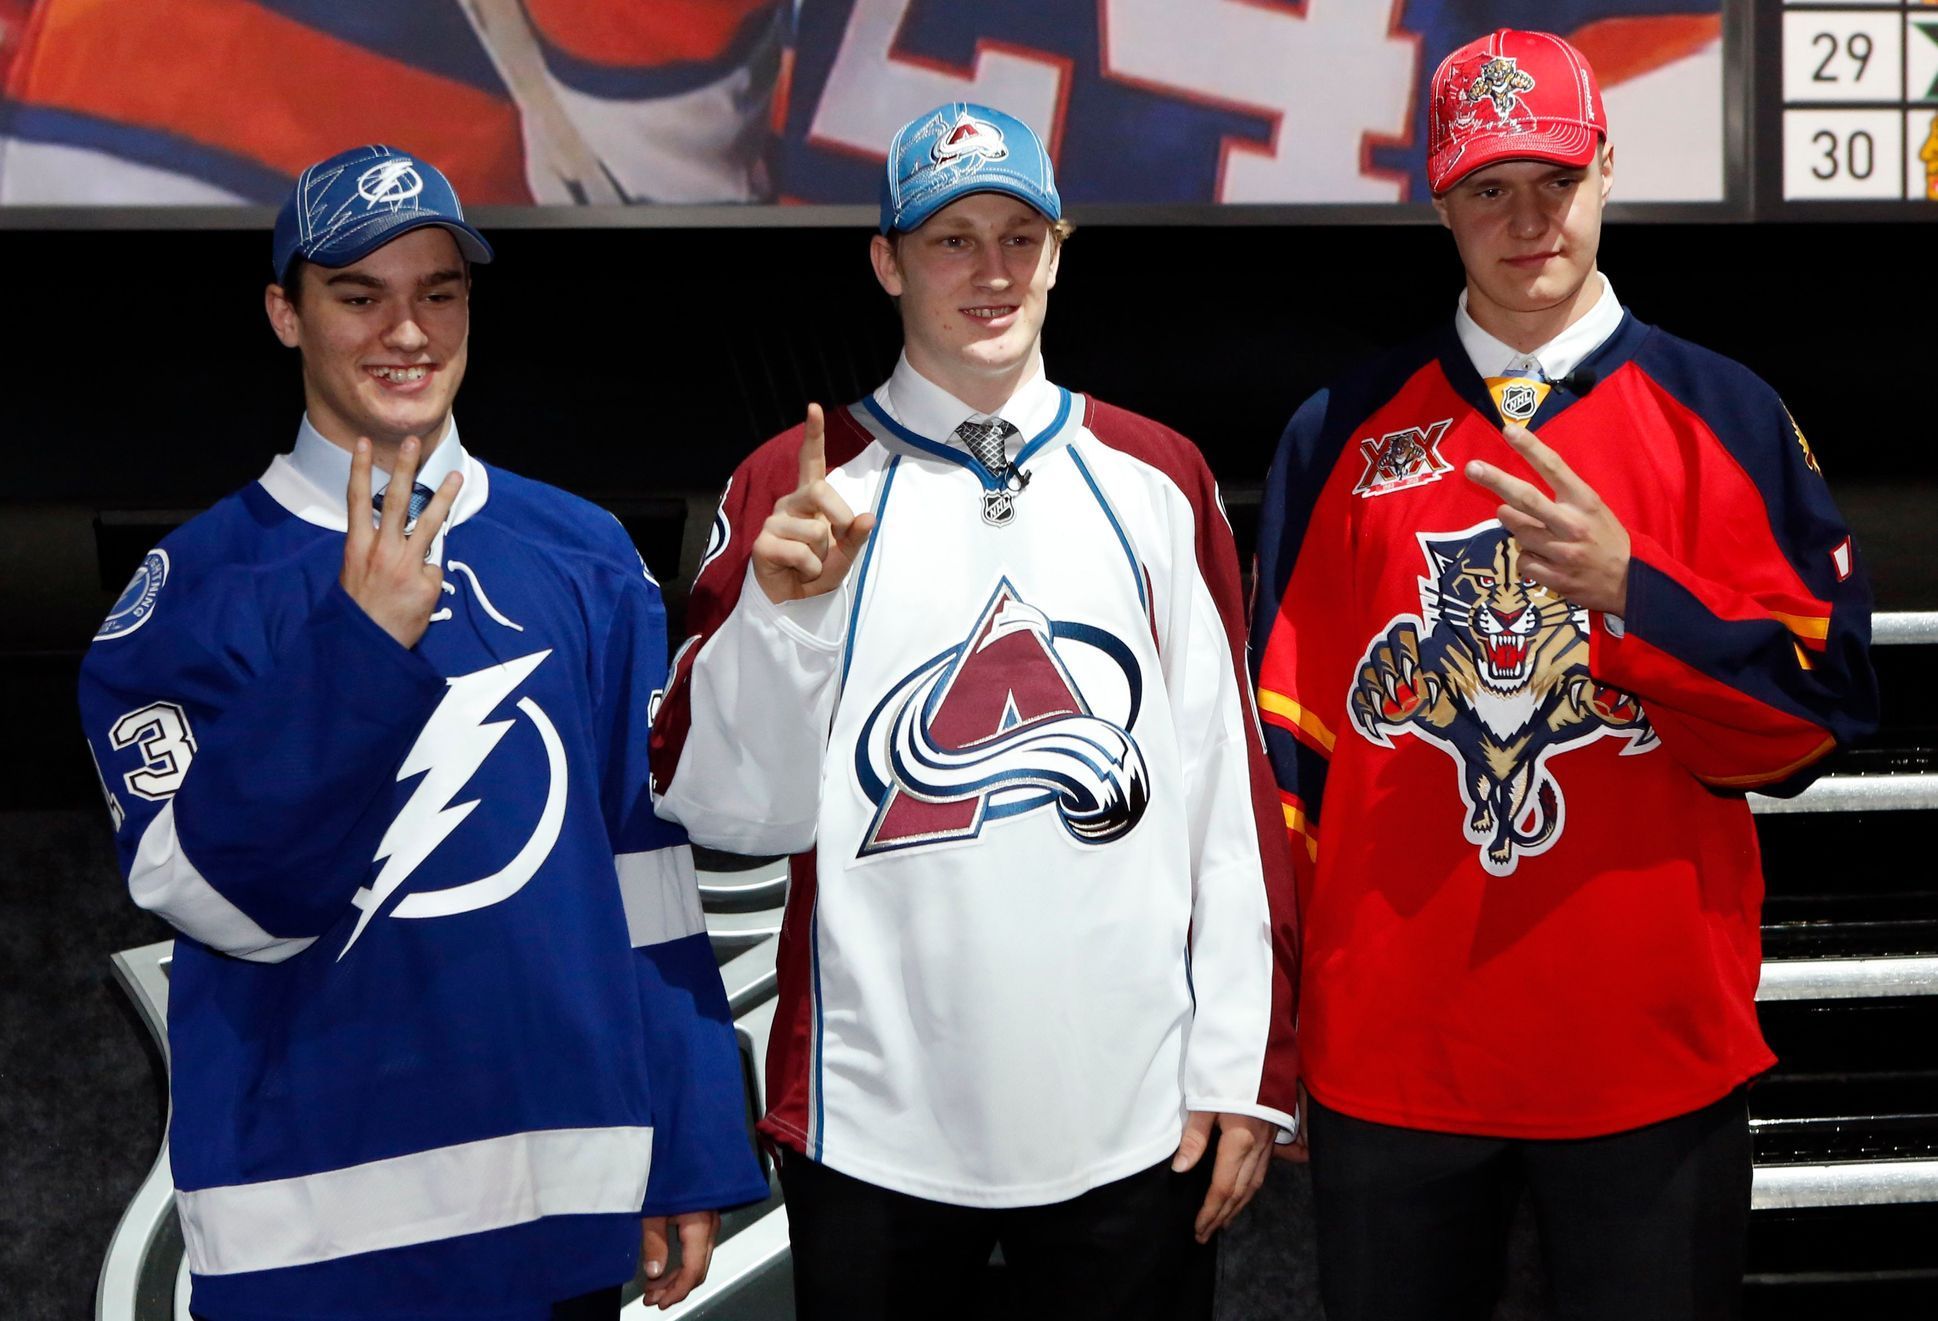 Nejlepší trojka draftu NHL 2013